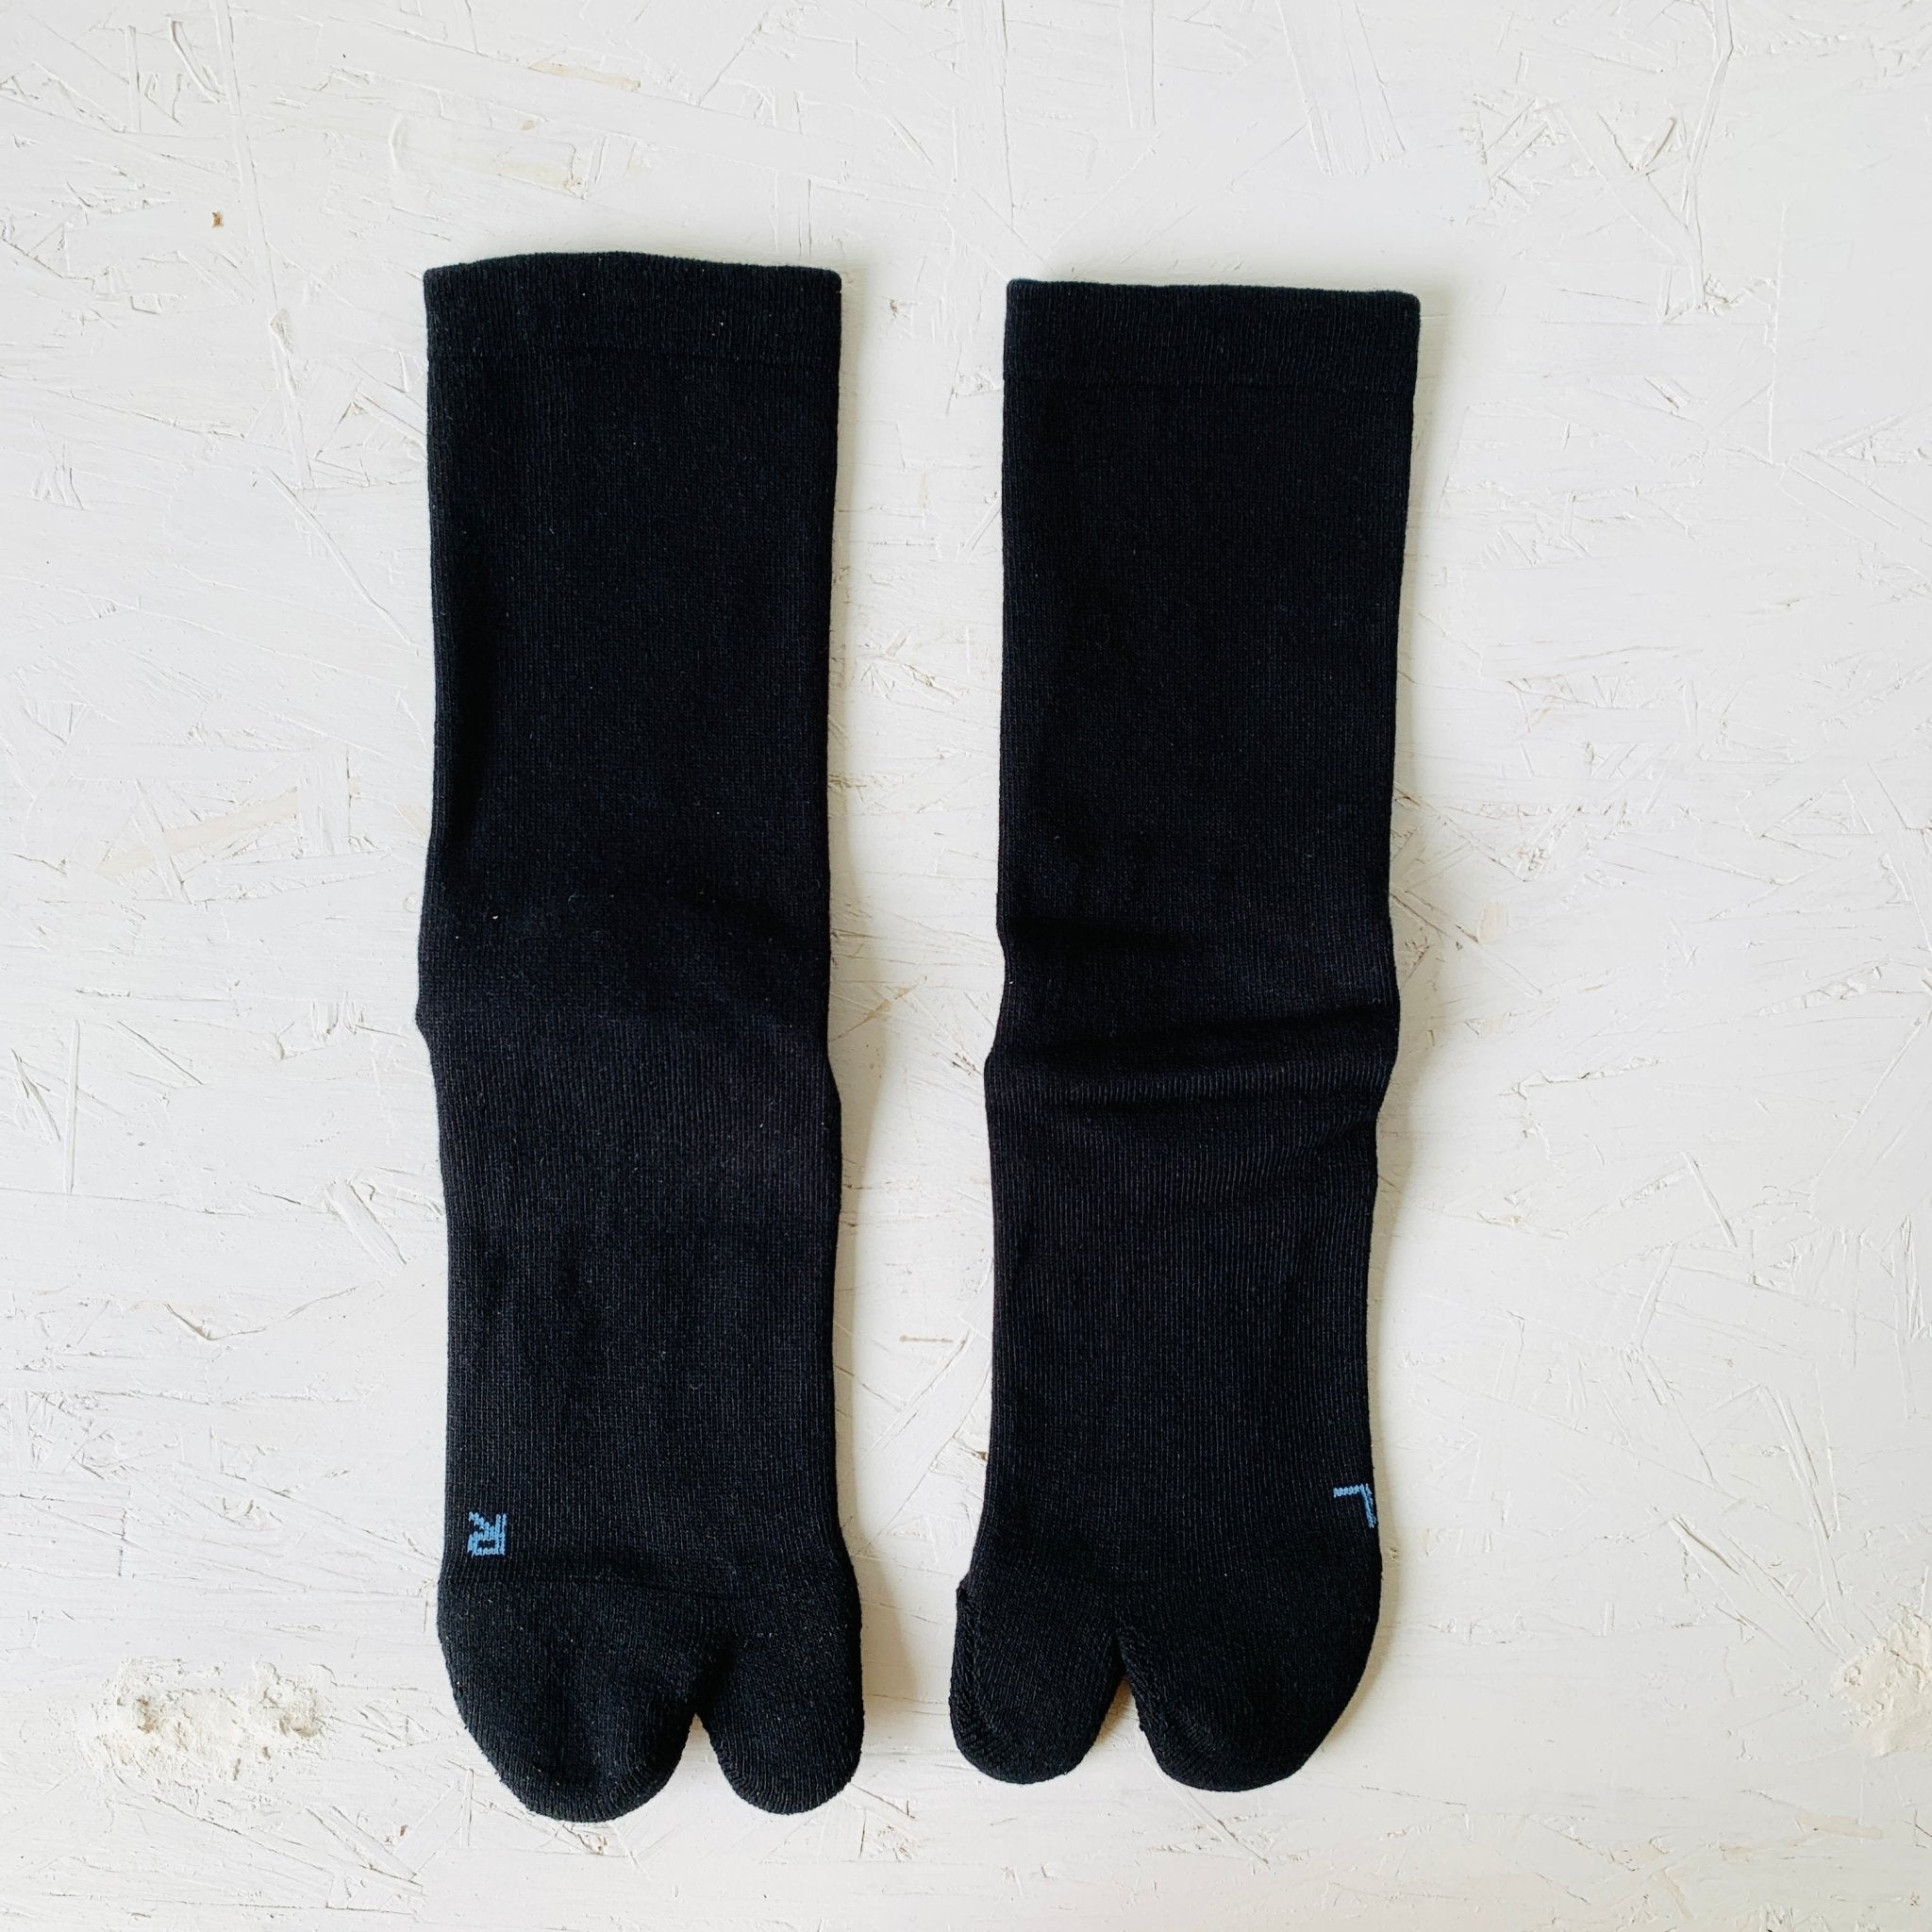 AMITABI Essential Tabi Socks - Taiko Co.Ltd - MIKAFleur